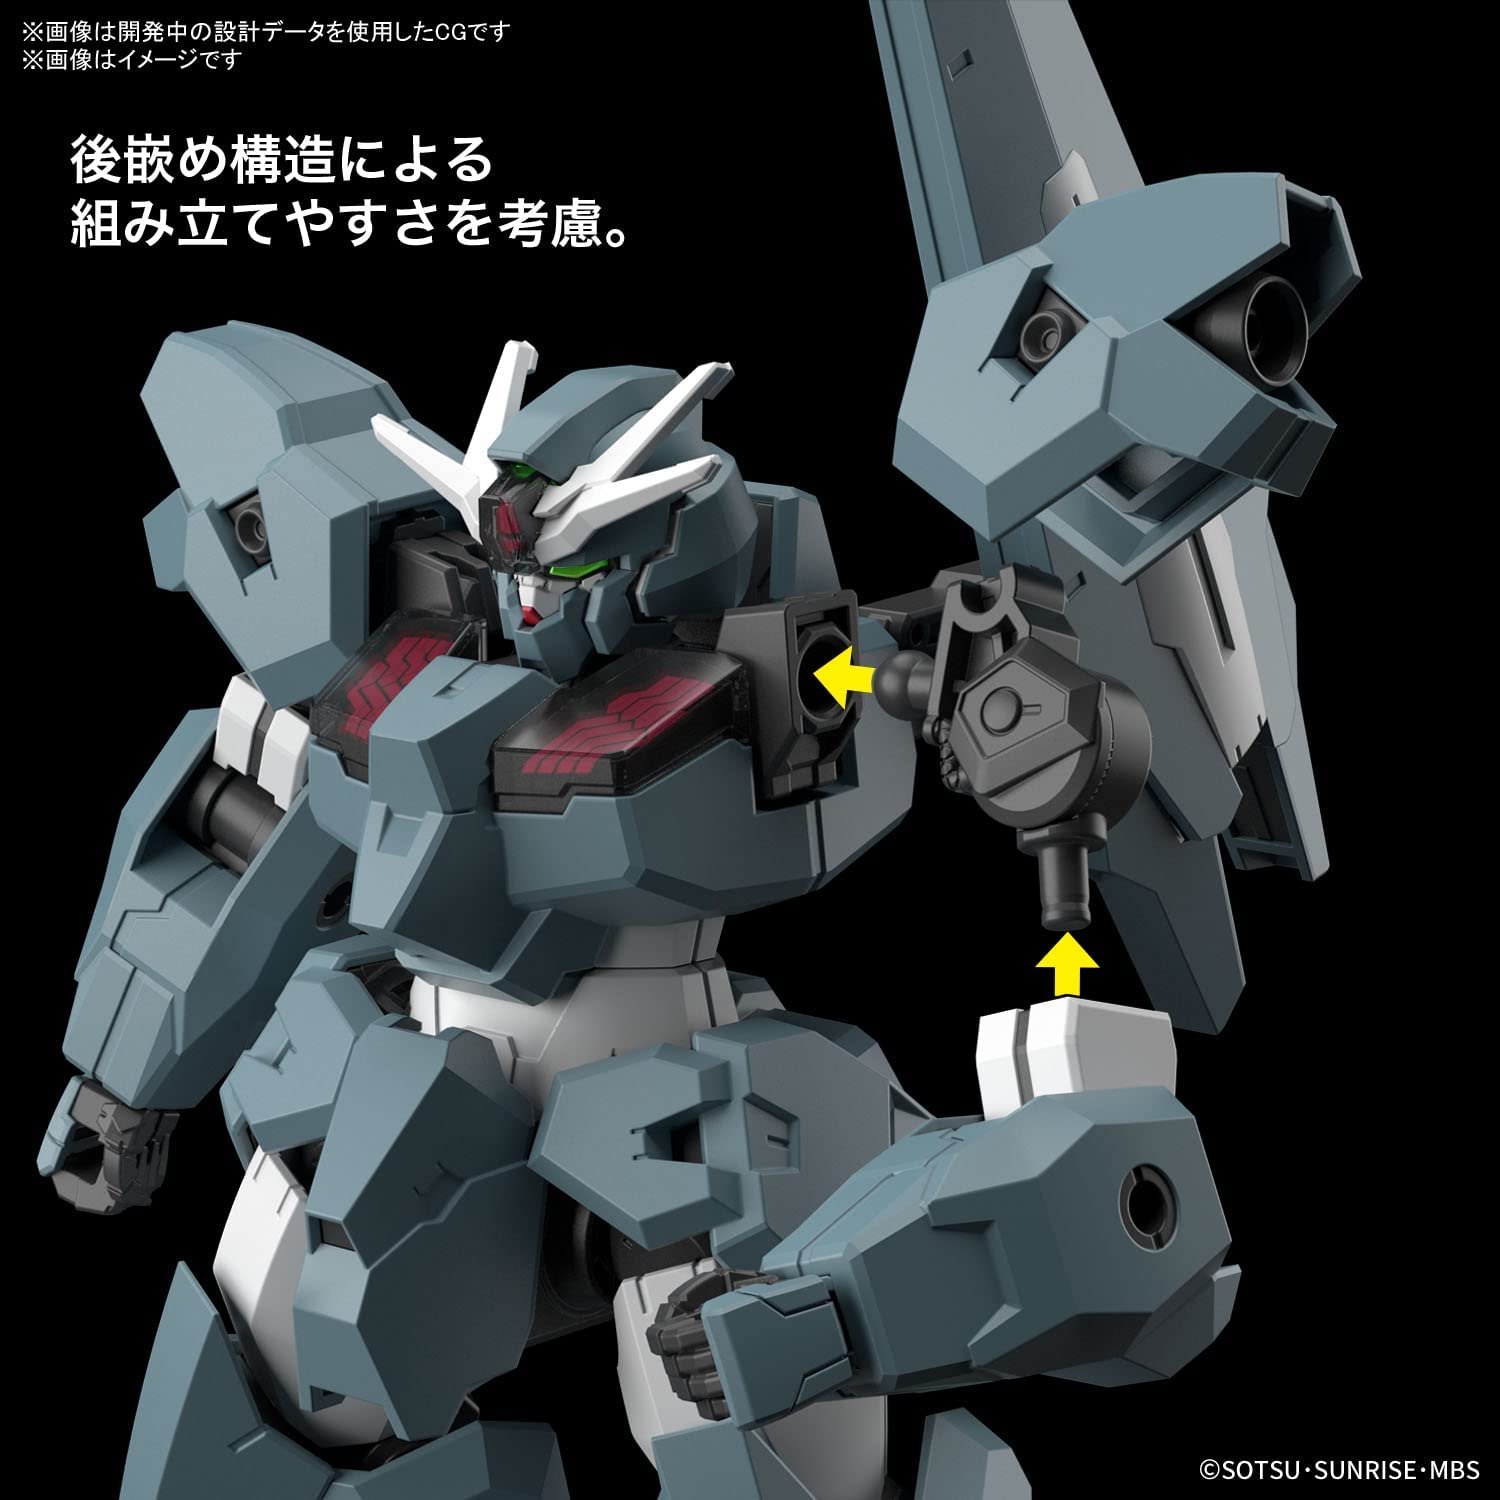 Lfrith Ur shell units with Gundam Marker : r/Gunpla